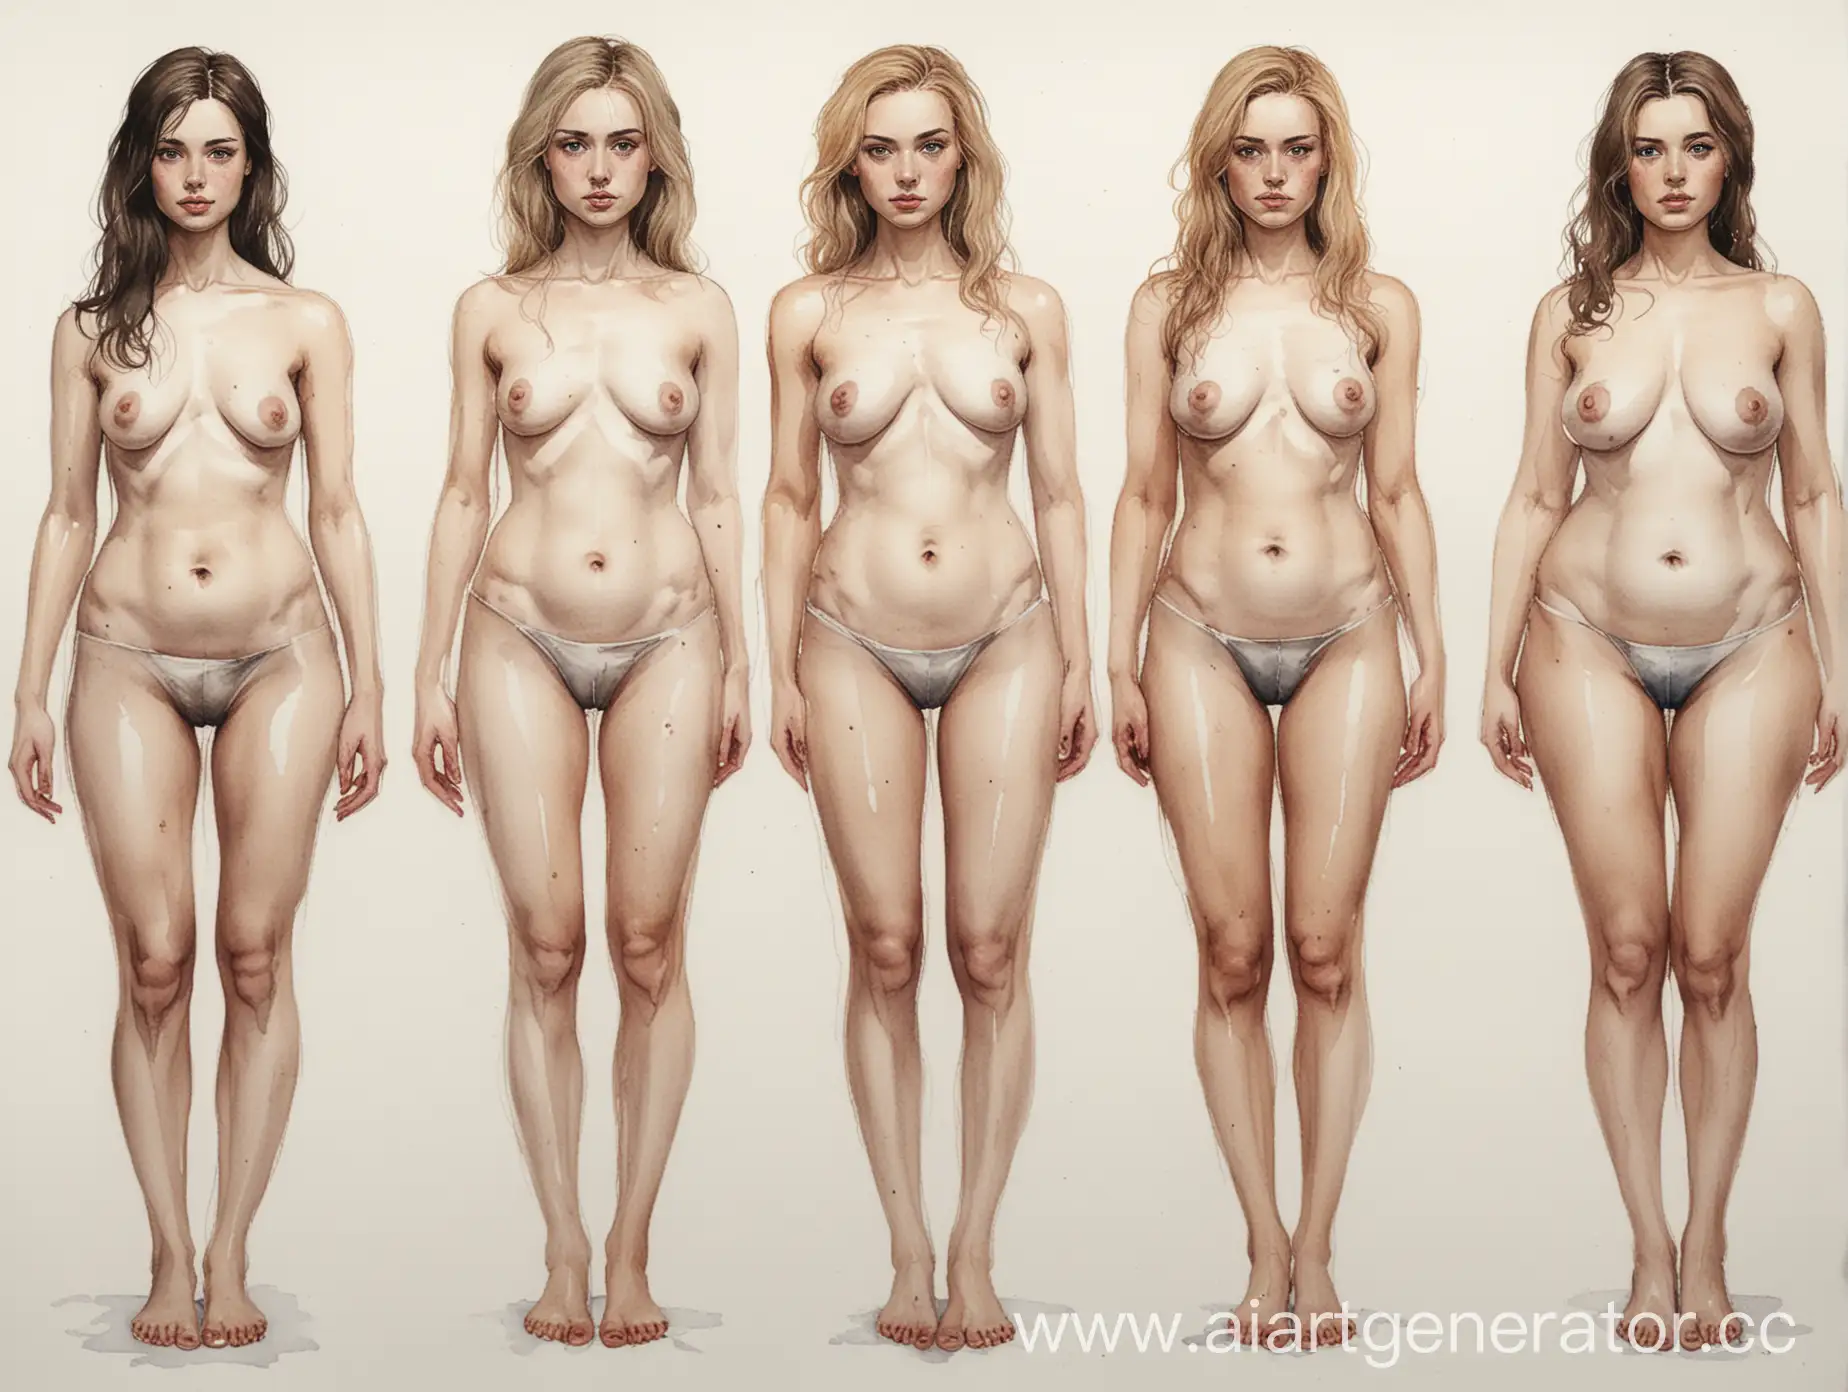 акварель с детализацией = полный рост: 
количество = три женщины;
первая женщина = анорексичная;
вторая женщина = стройная сексуальная;
третья женщина = пышная;
